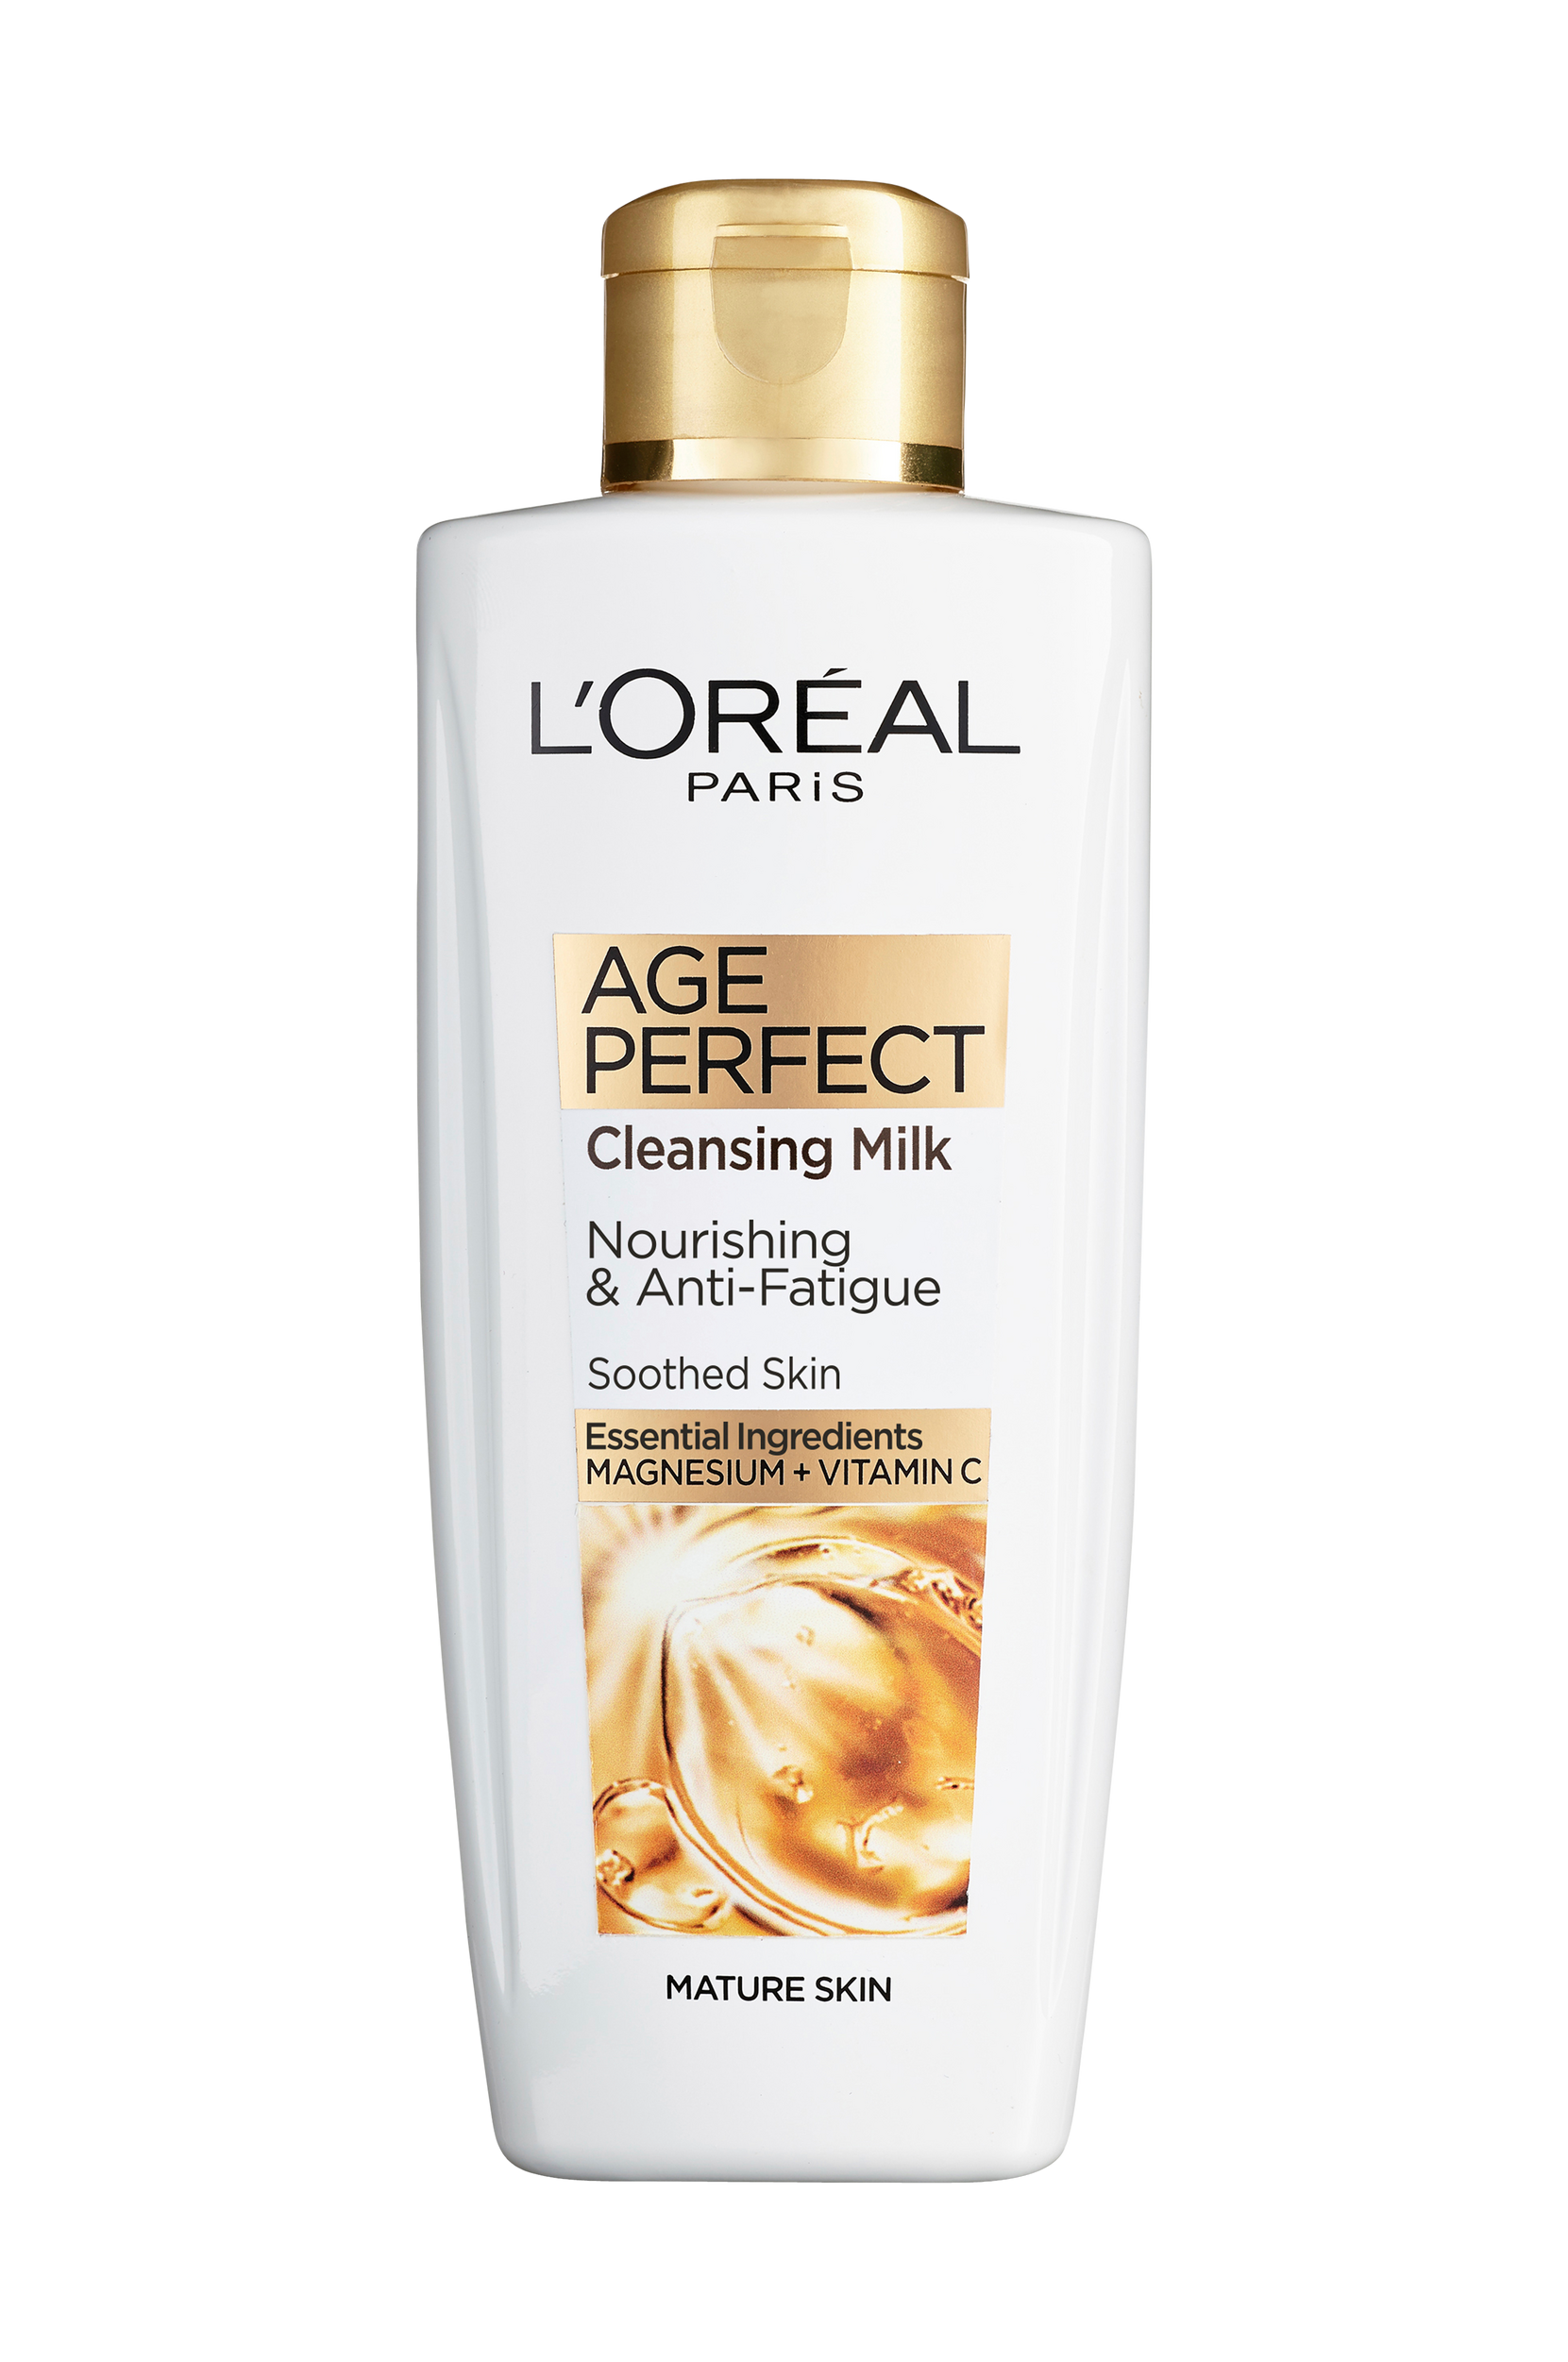 Age Perfect Cleansning Milk 200 ml, L'Oréal Paris